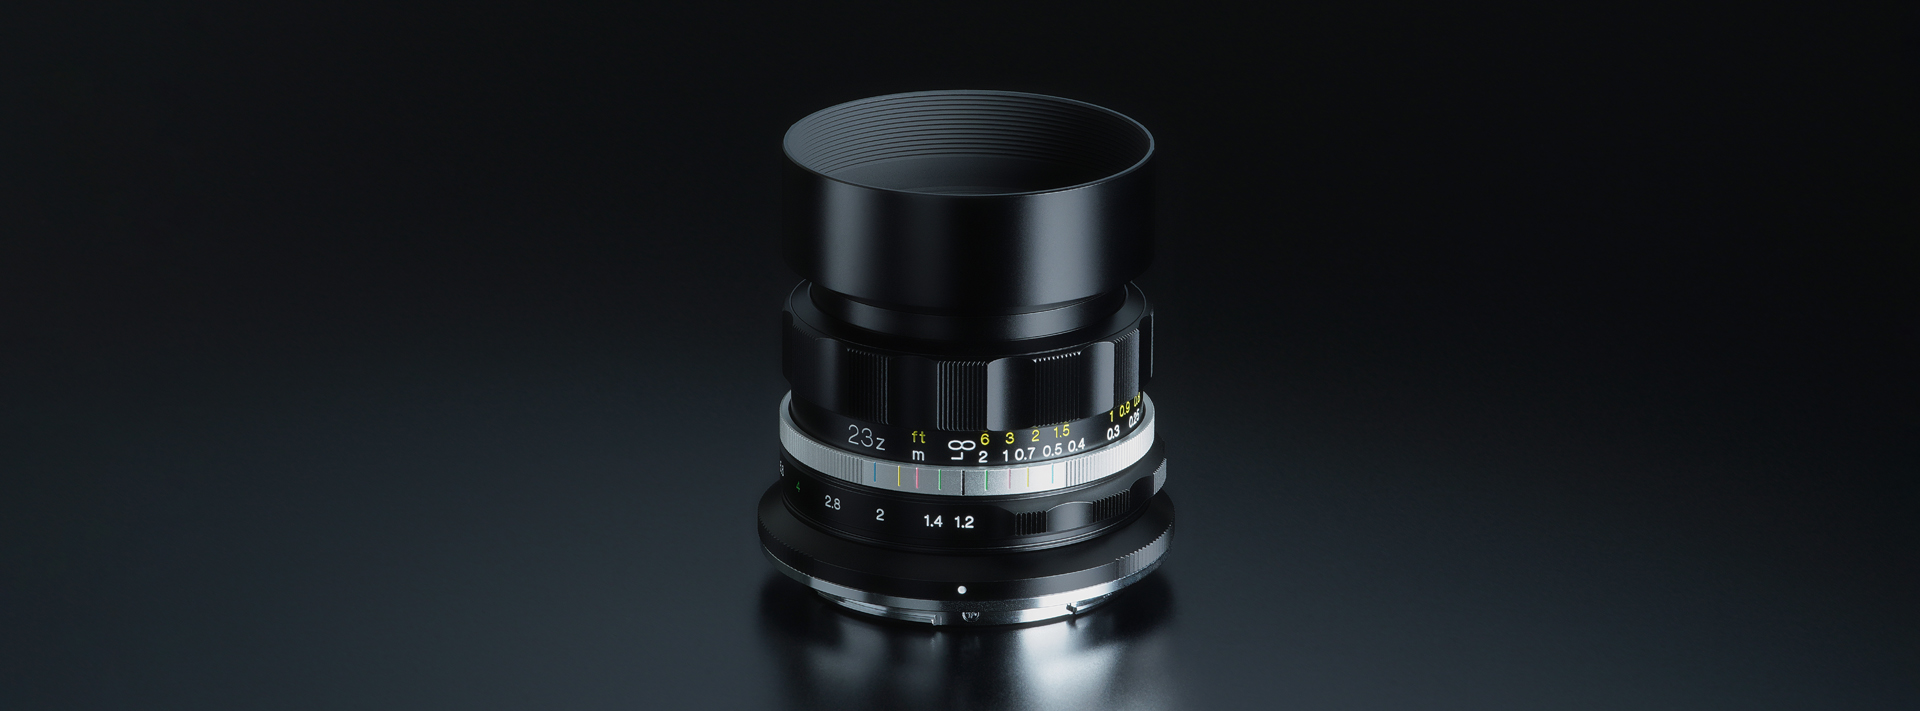 カメラ レンズ(単焦点) NOKTON D23mm F1.2 Aspherical - 株式会社コシナ